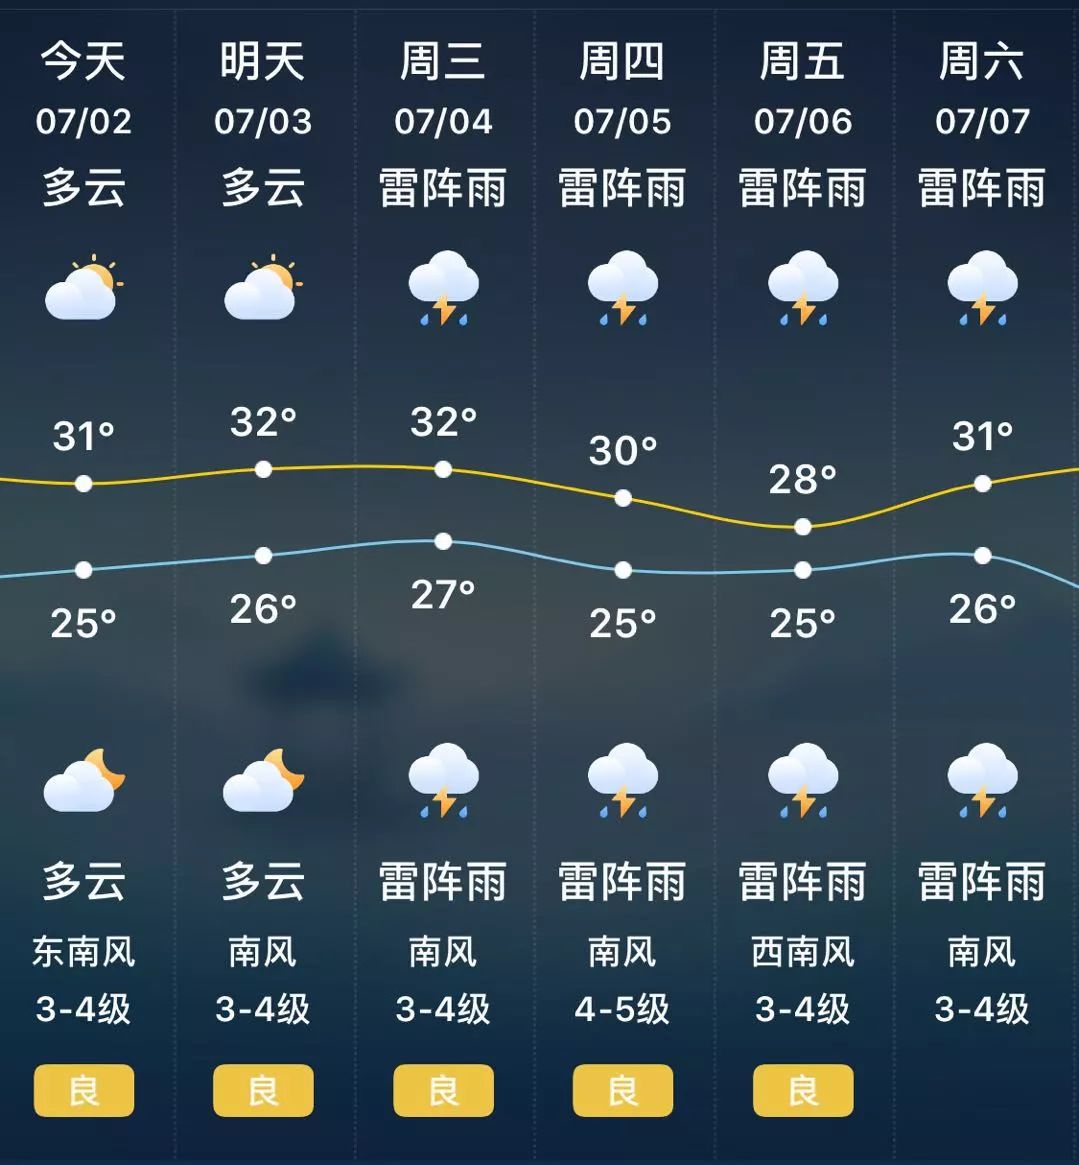 【一周天气】南京今明以多云为主 偶有分散性雷阵雨突袭